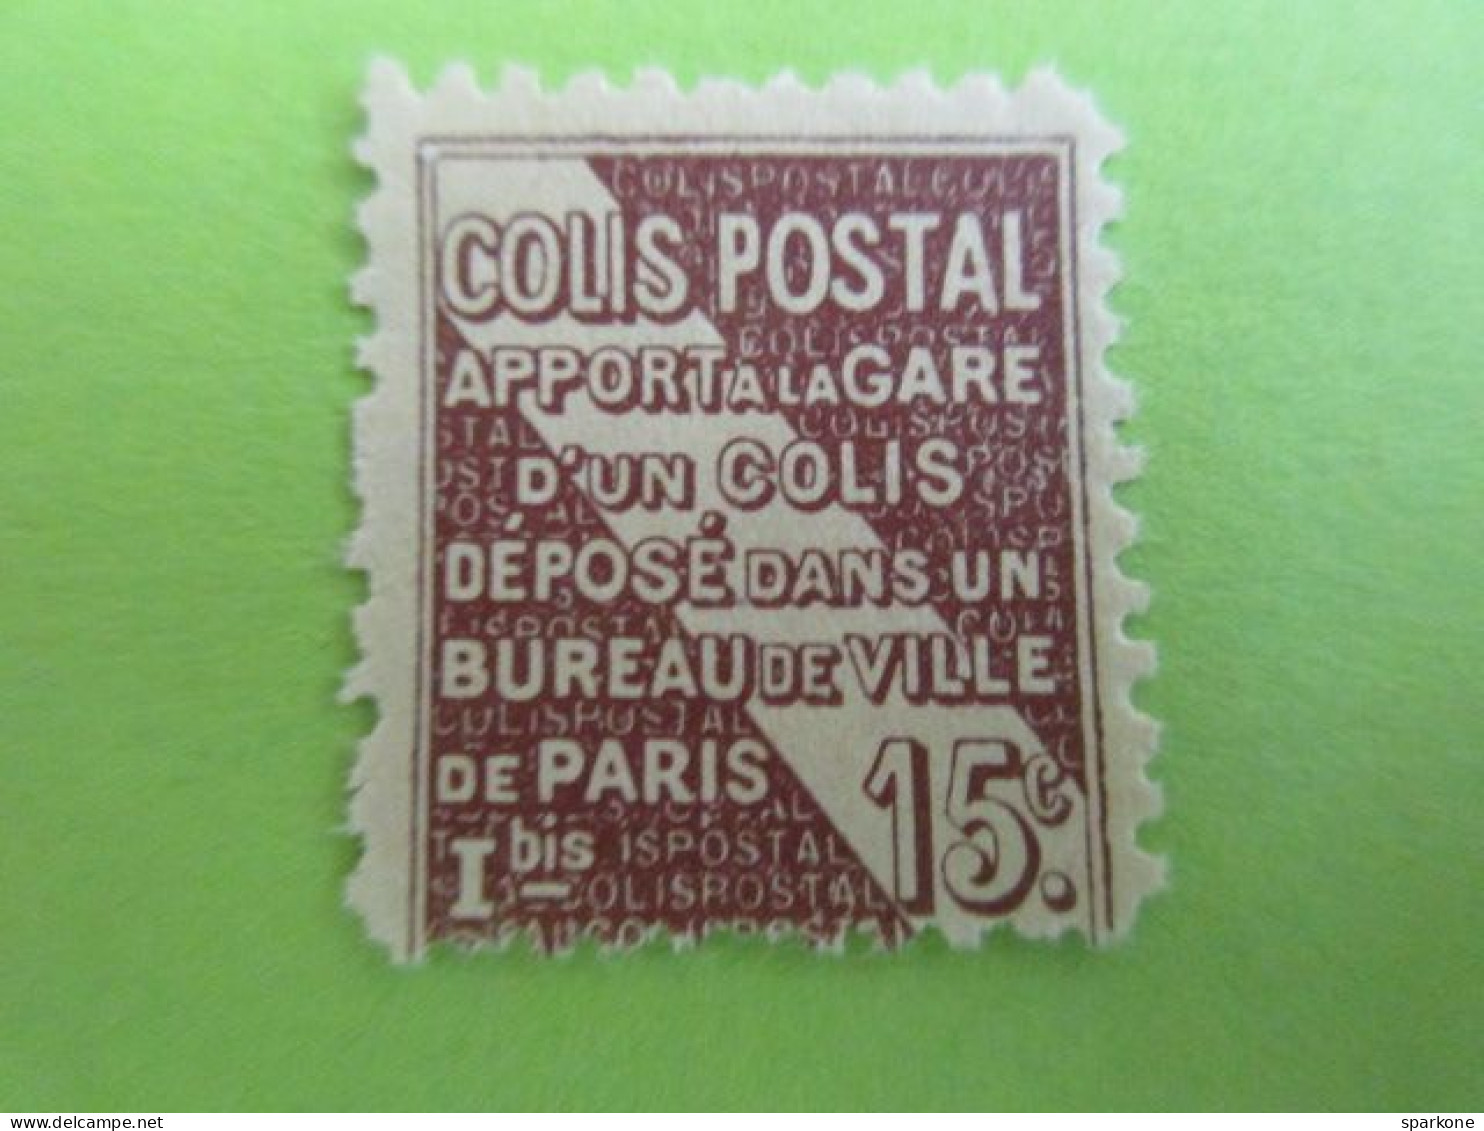 Timbre - Colis Postal 15c - Apport à La Gare D'un Colis Déposé Dans Un Bureau De Ville De Paris - Mint/Hinged